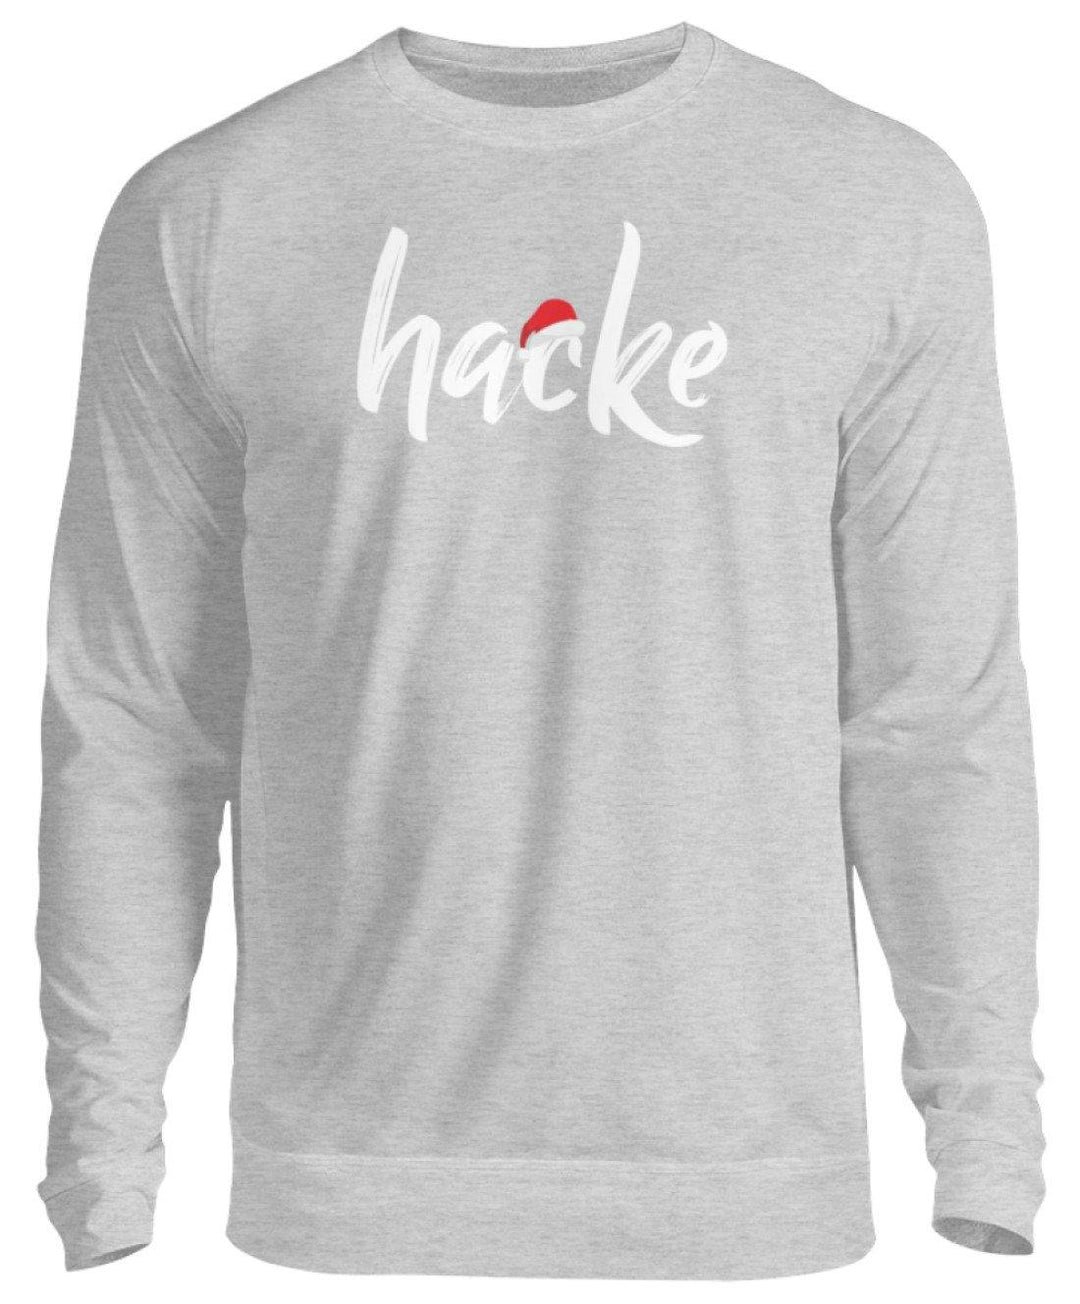 Hacke - Hacke Dicht - Words on Shirt  - Unisex Pullover - Words on Shirts Sag es mit dem Mittelfinger Shirts Hoodies Sweatshirt Taschen Gymsack Spruch Sprüche Statement